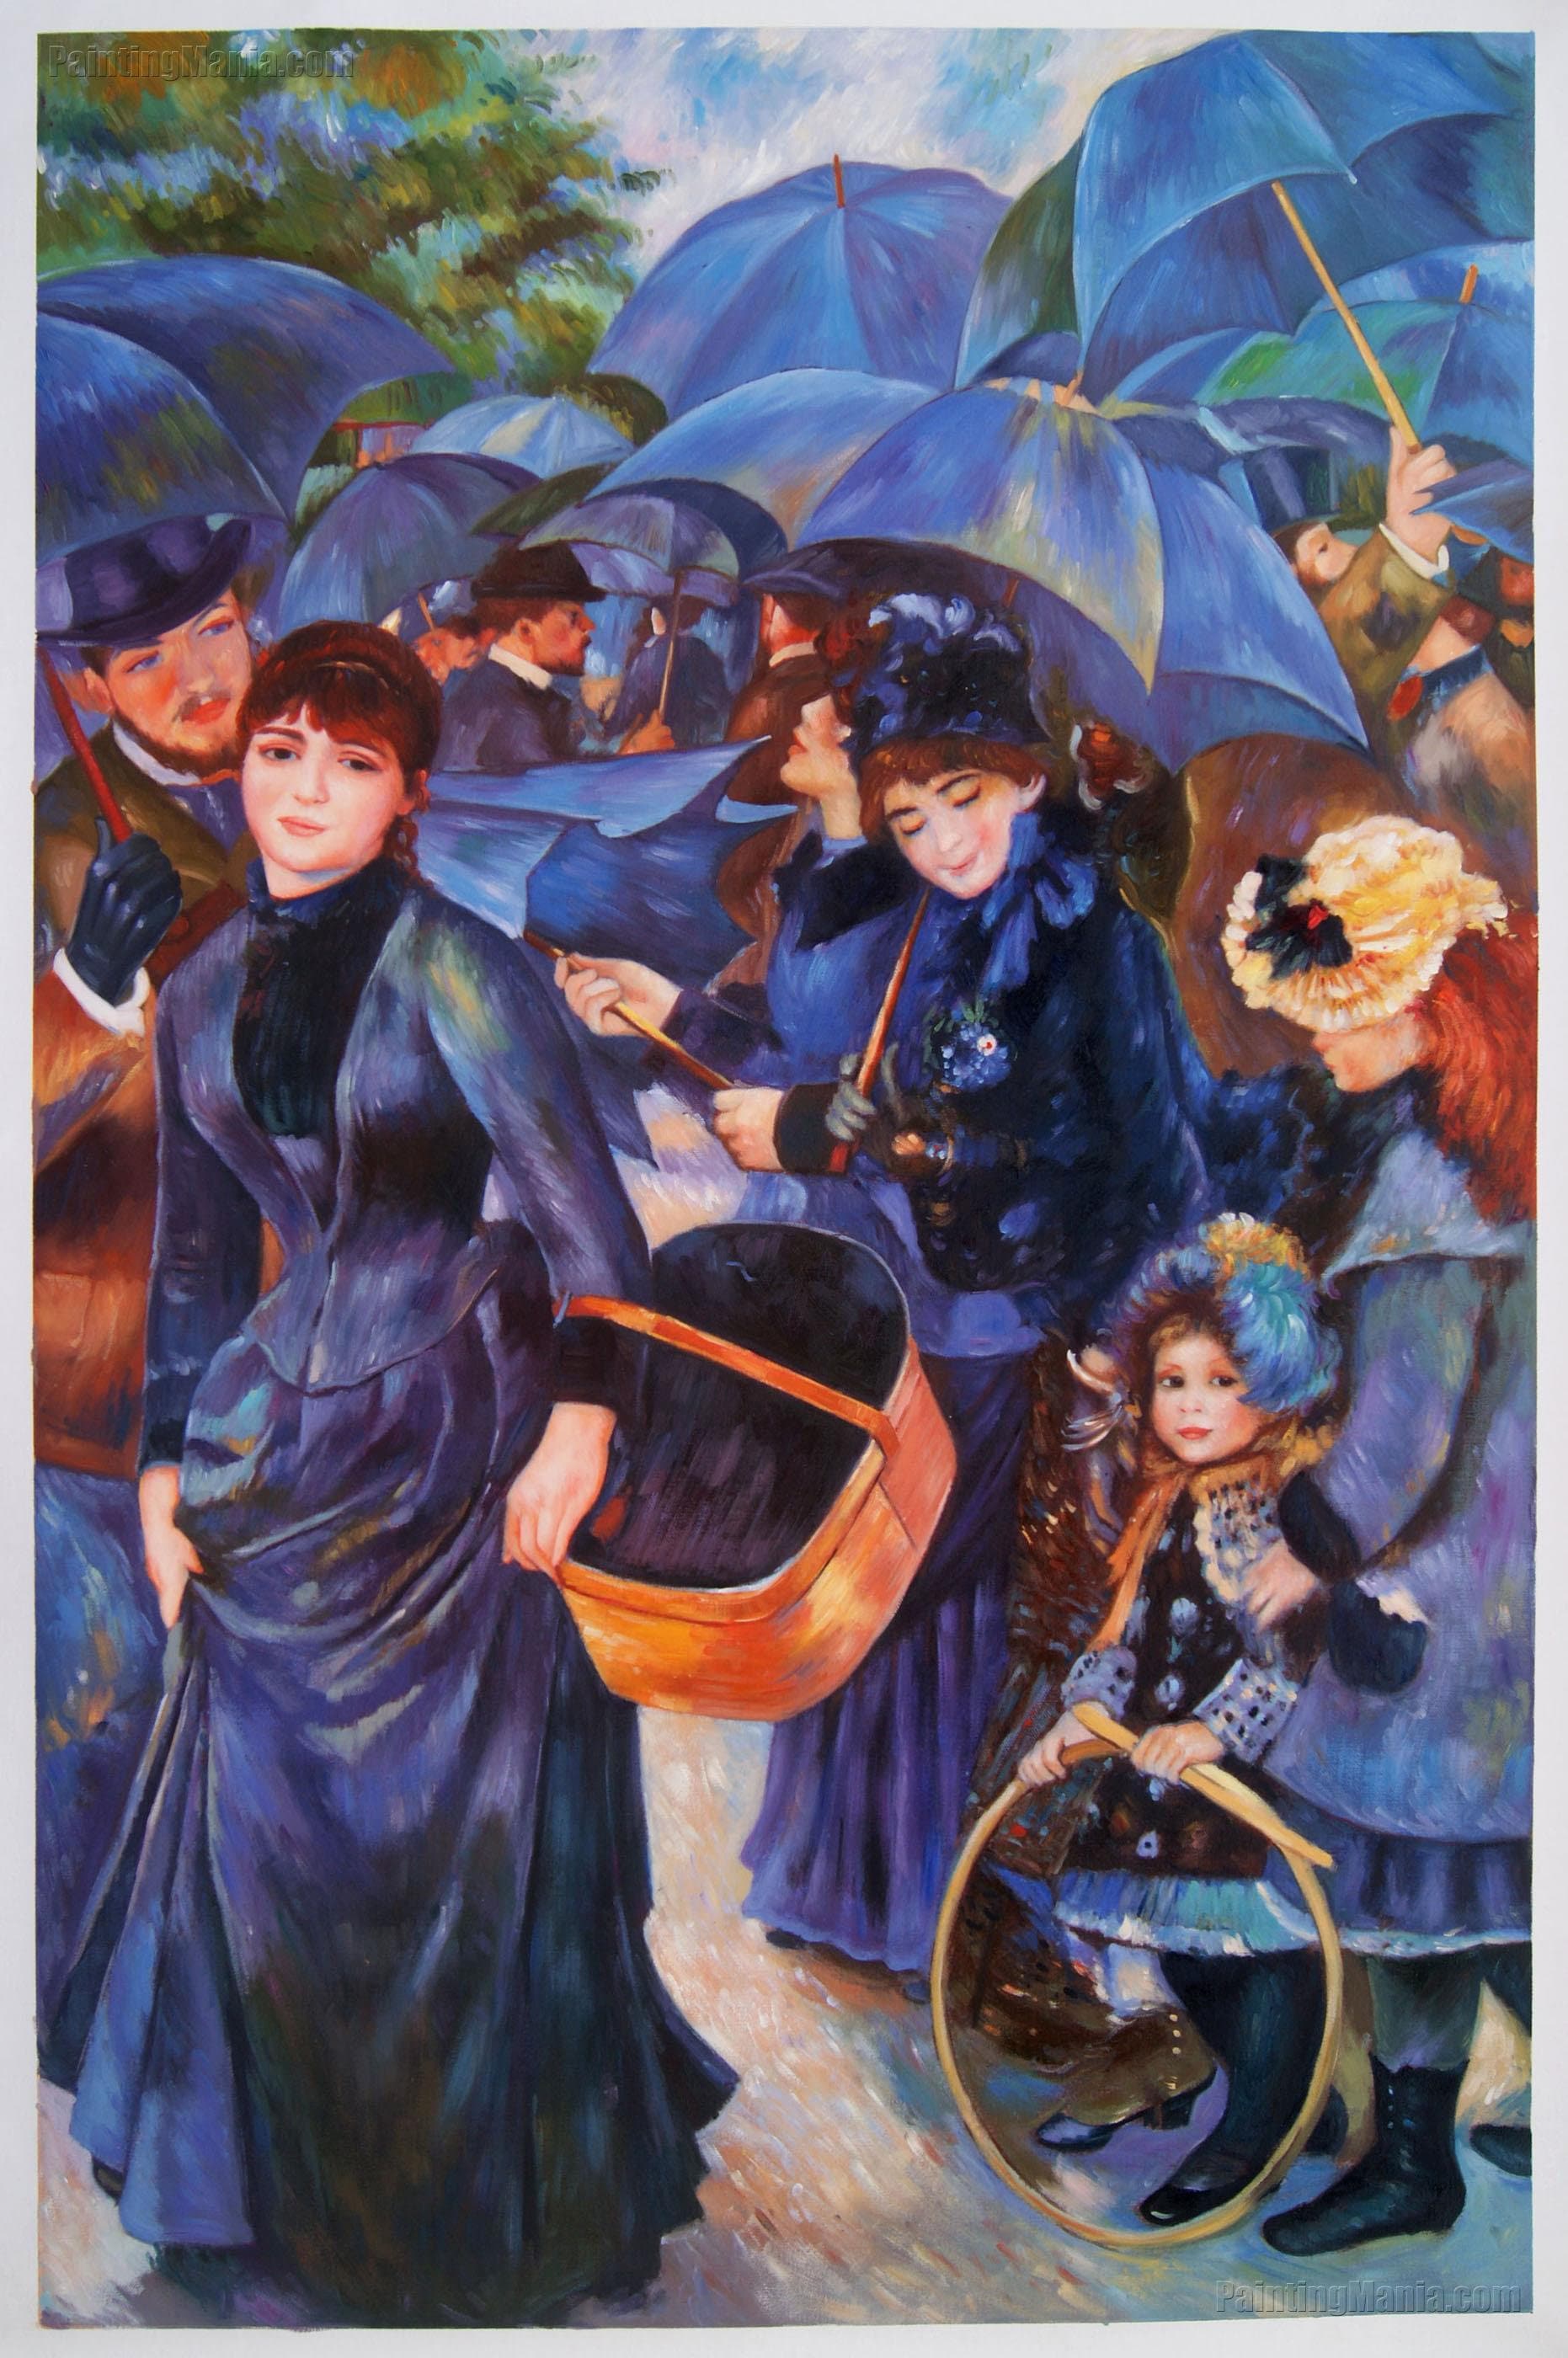 The Umbrellas By Renoir